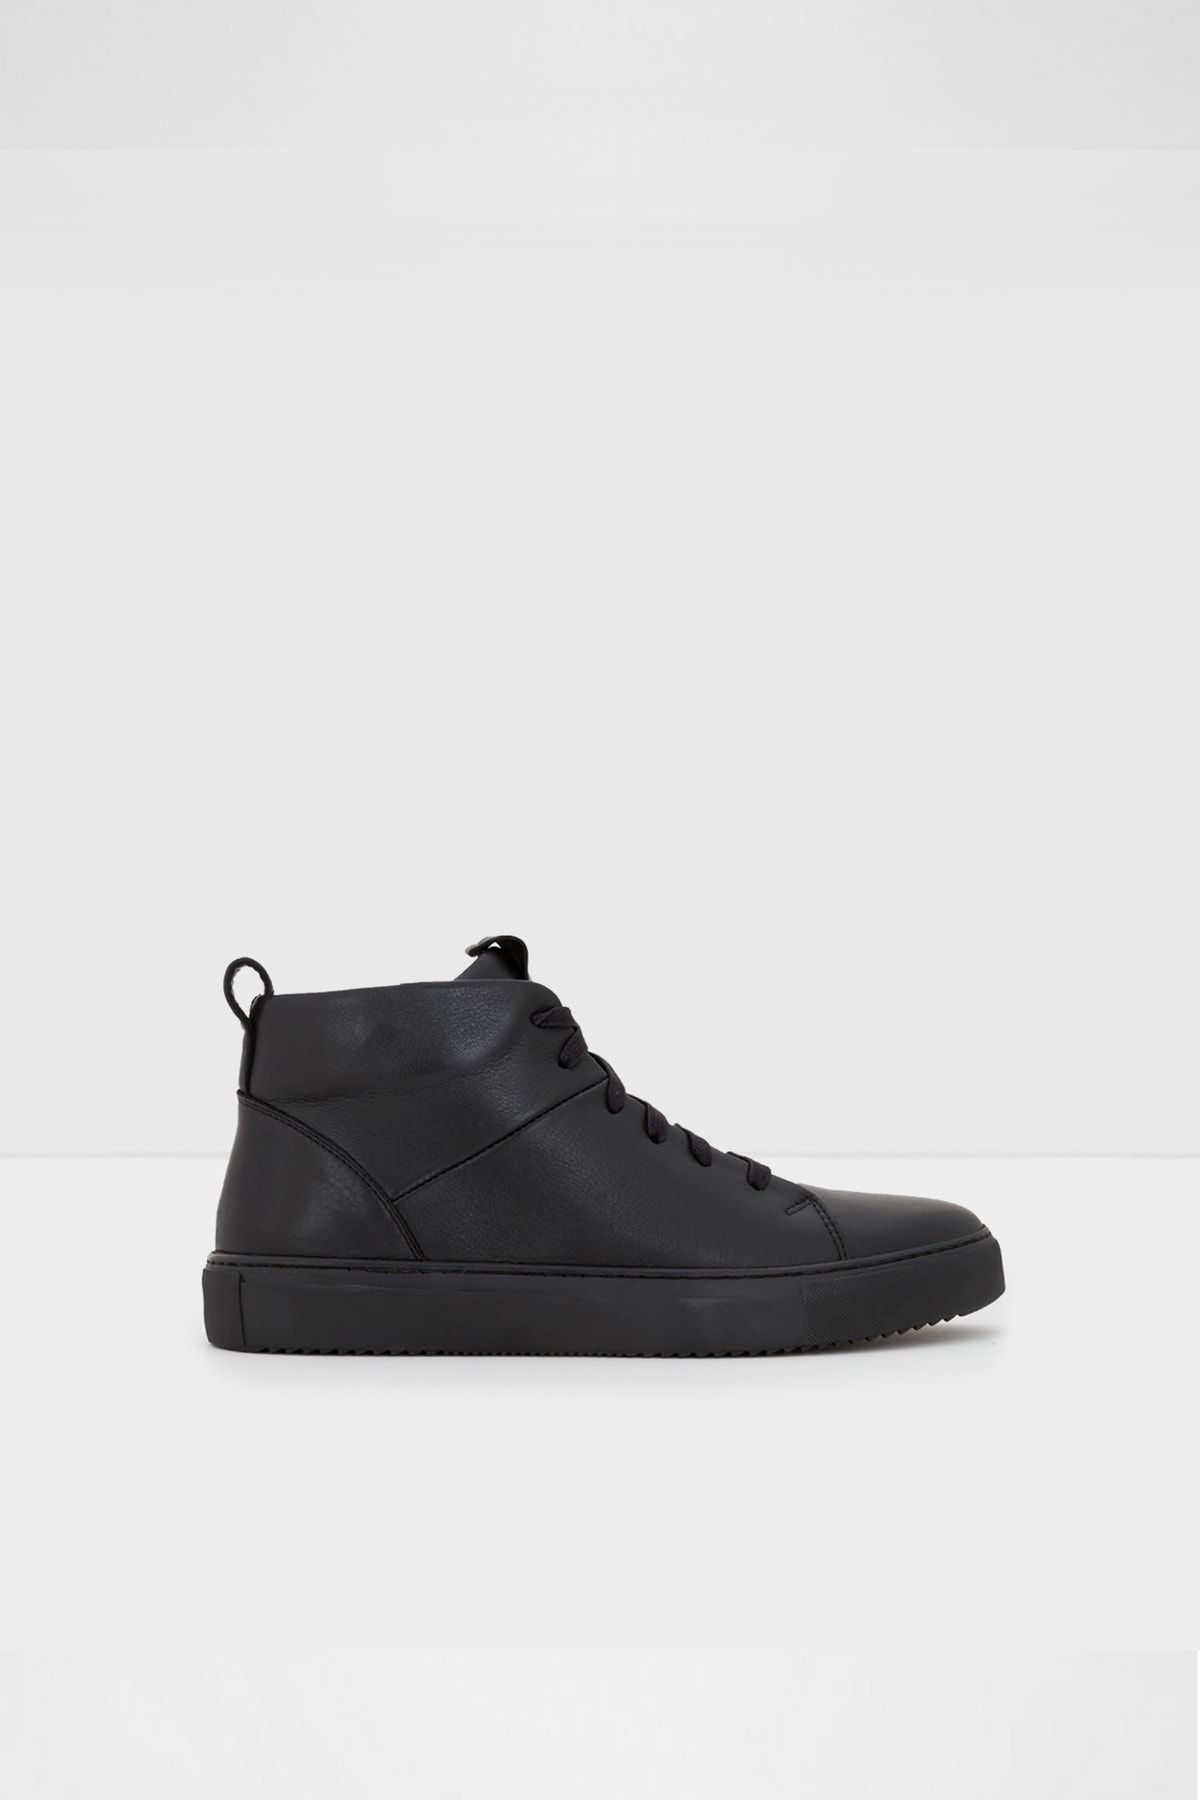 Aldo Erkek Siyah Cowlyd Sneaker Ayakkabı